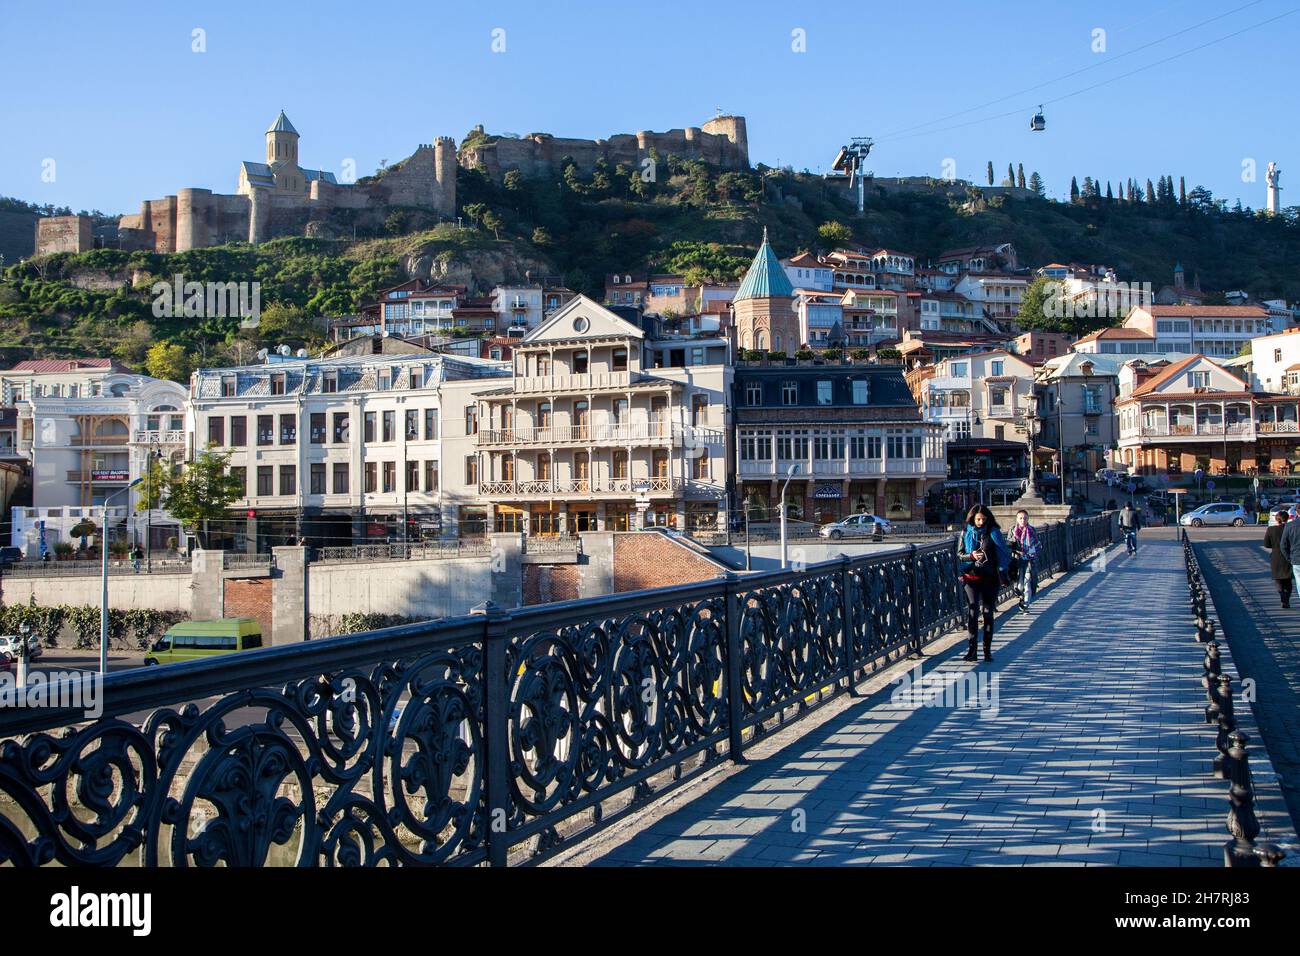 Tbilisi,Georgia - 11-03-2016:fortezza storica di Narikala, Cattedrale di Sioni, Ponte in pietra Metekhi sul fiume Kura, vista della città vecchia di Tbilisi Foto Stock